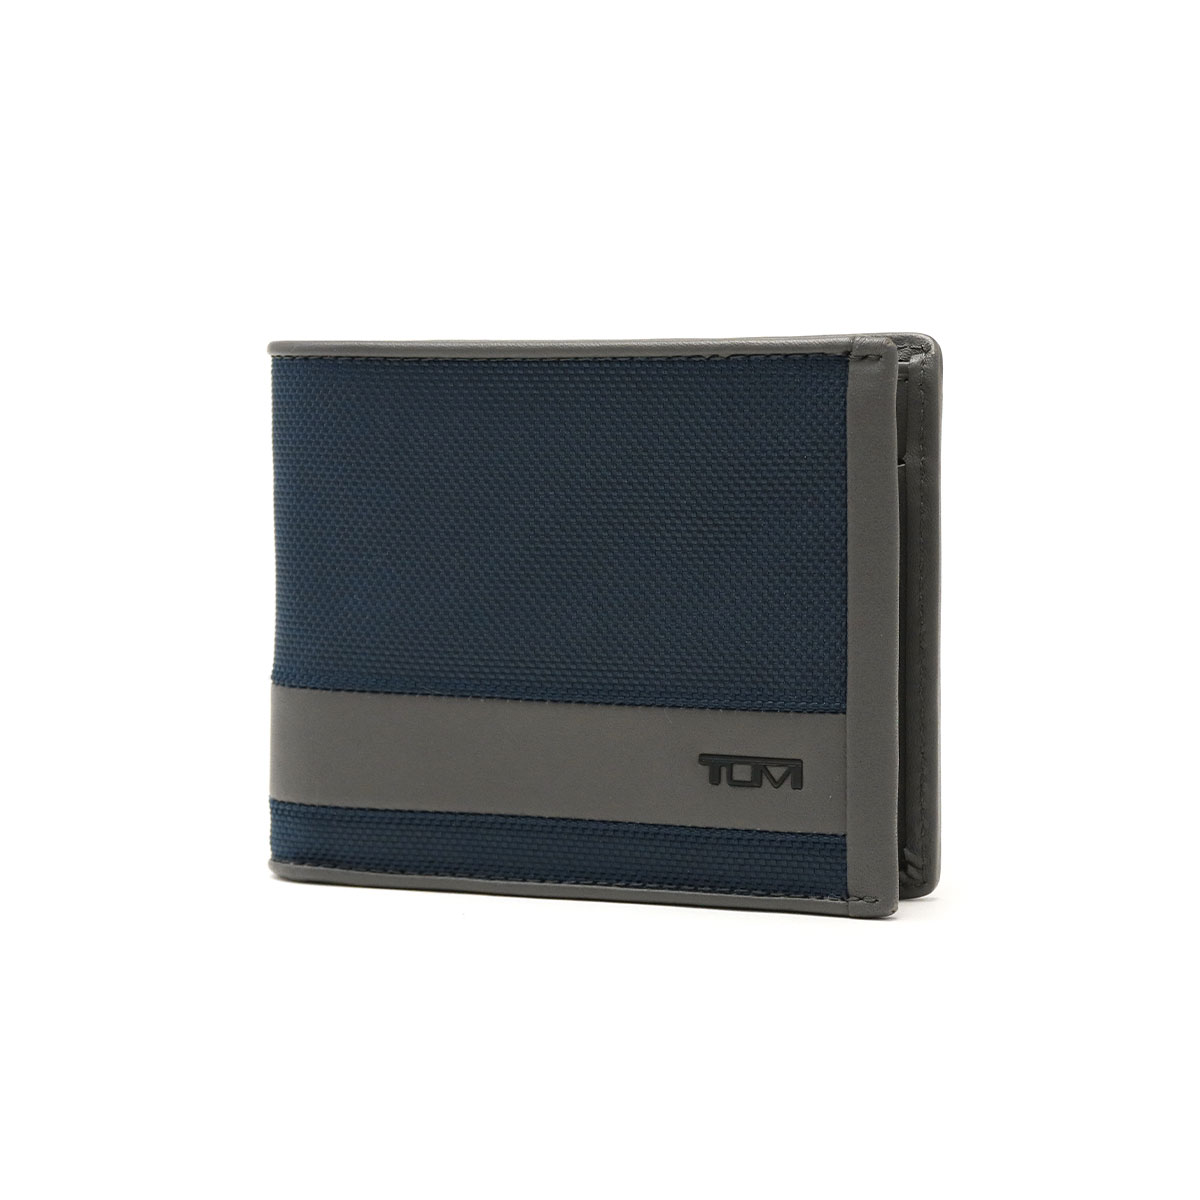 正規品2年保証 トゥミ 財布 TUMI 二つ折り財布 ブランド ALPHA SLG